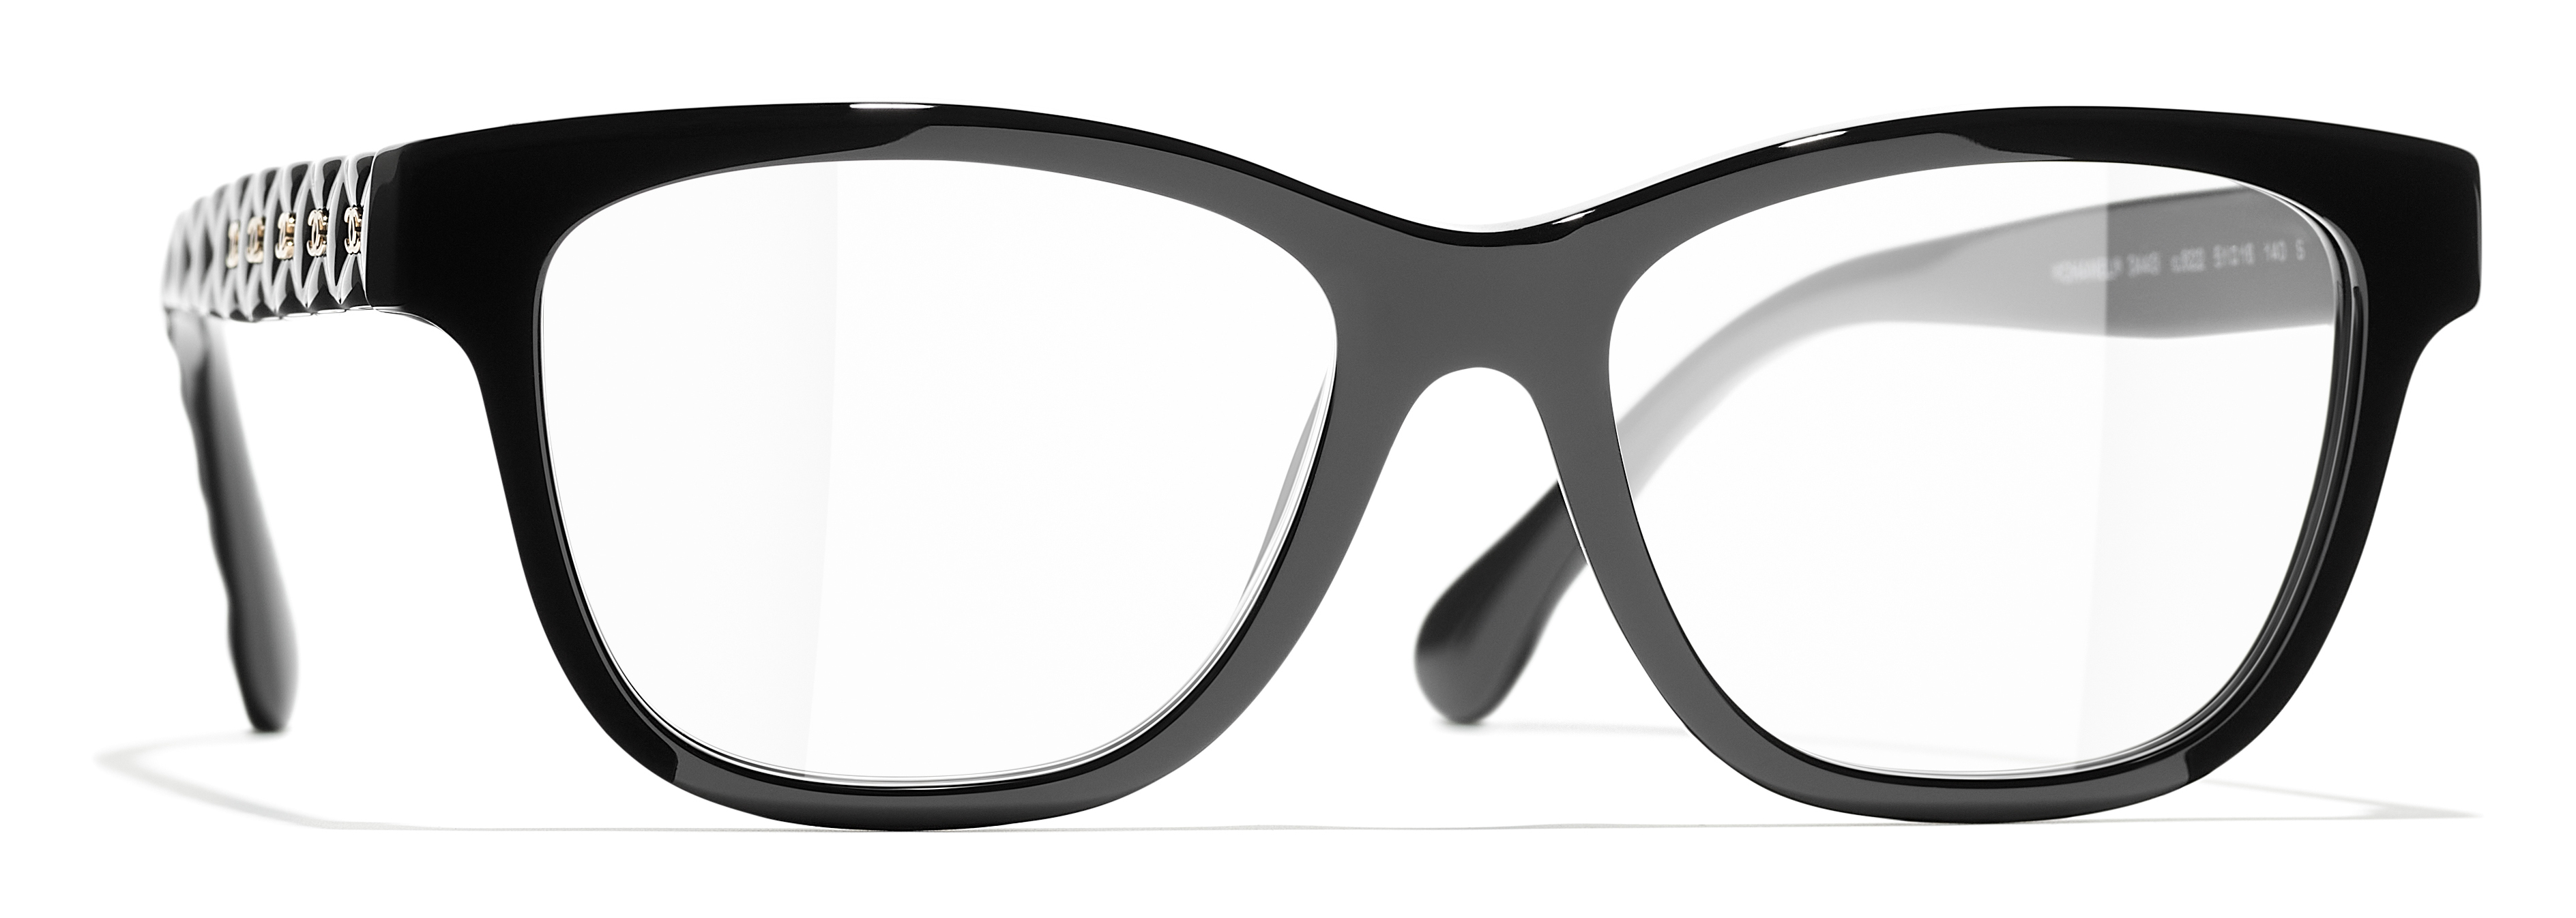 chanel square eyeglasses frames women